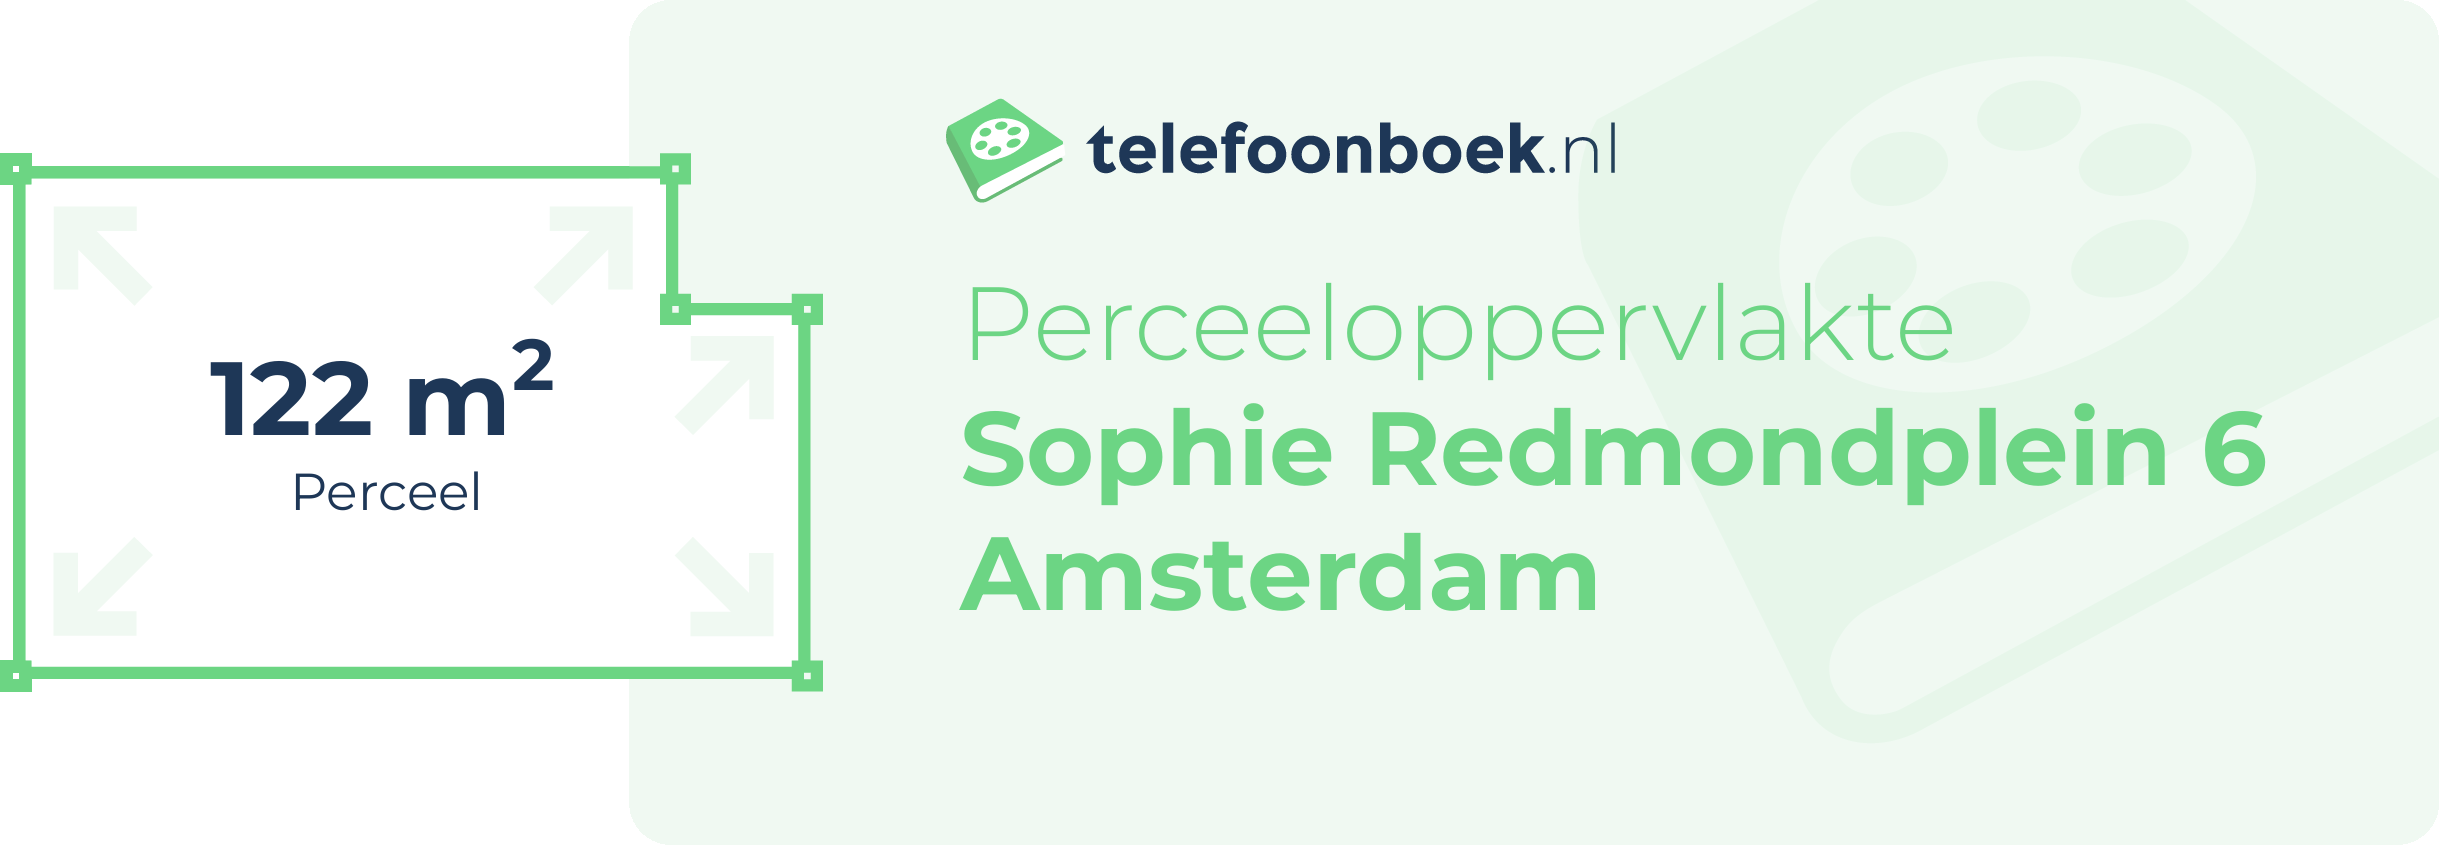 Perceeloppervlakte Sophie Redmondplein 6 Amsterdam